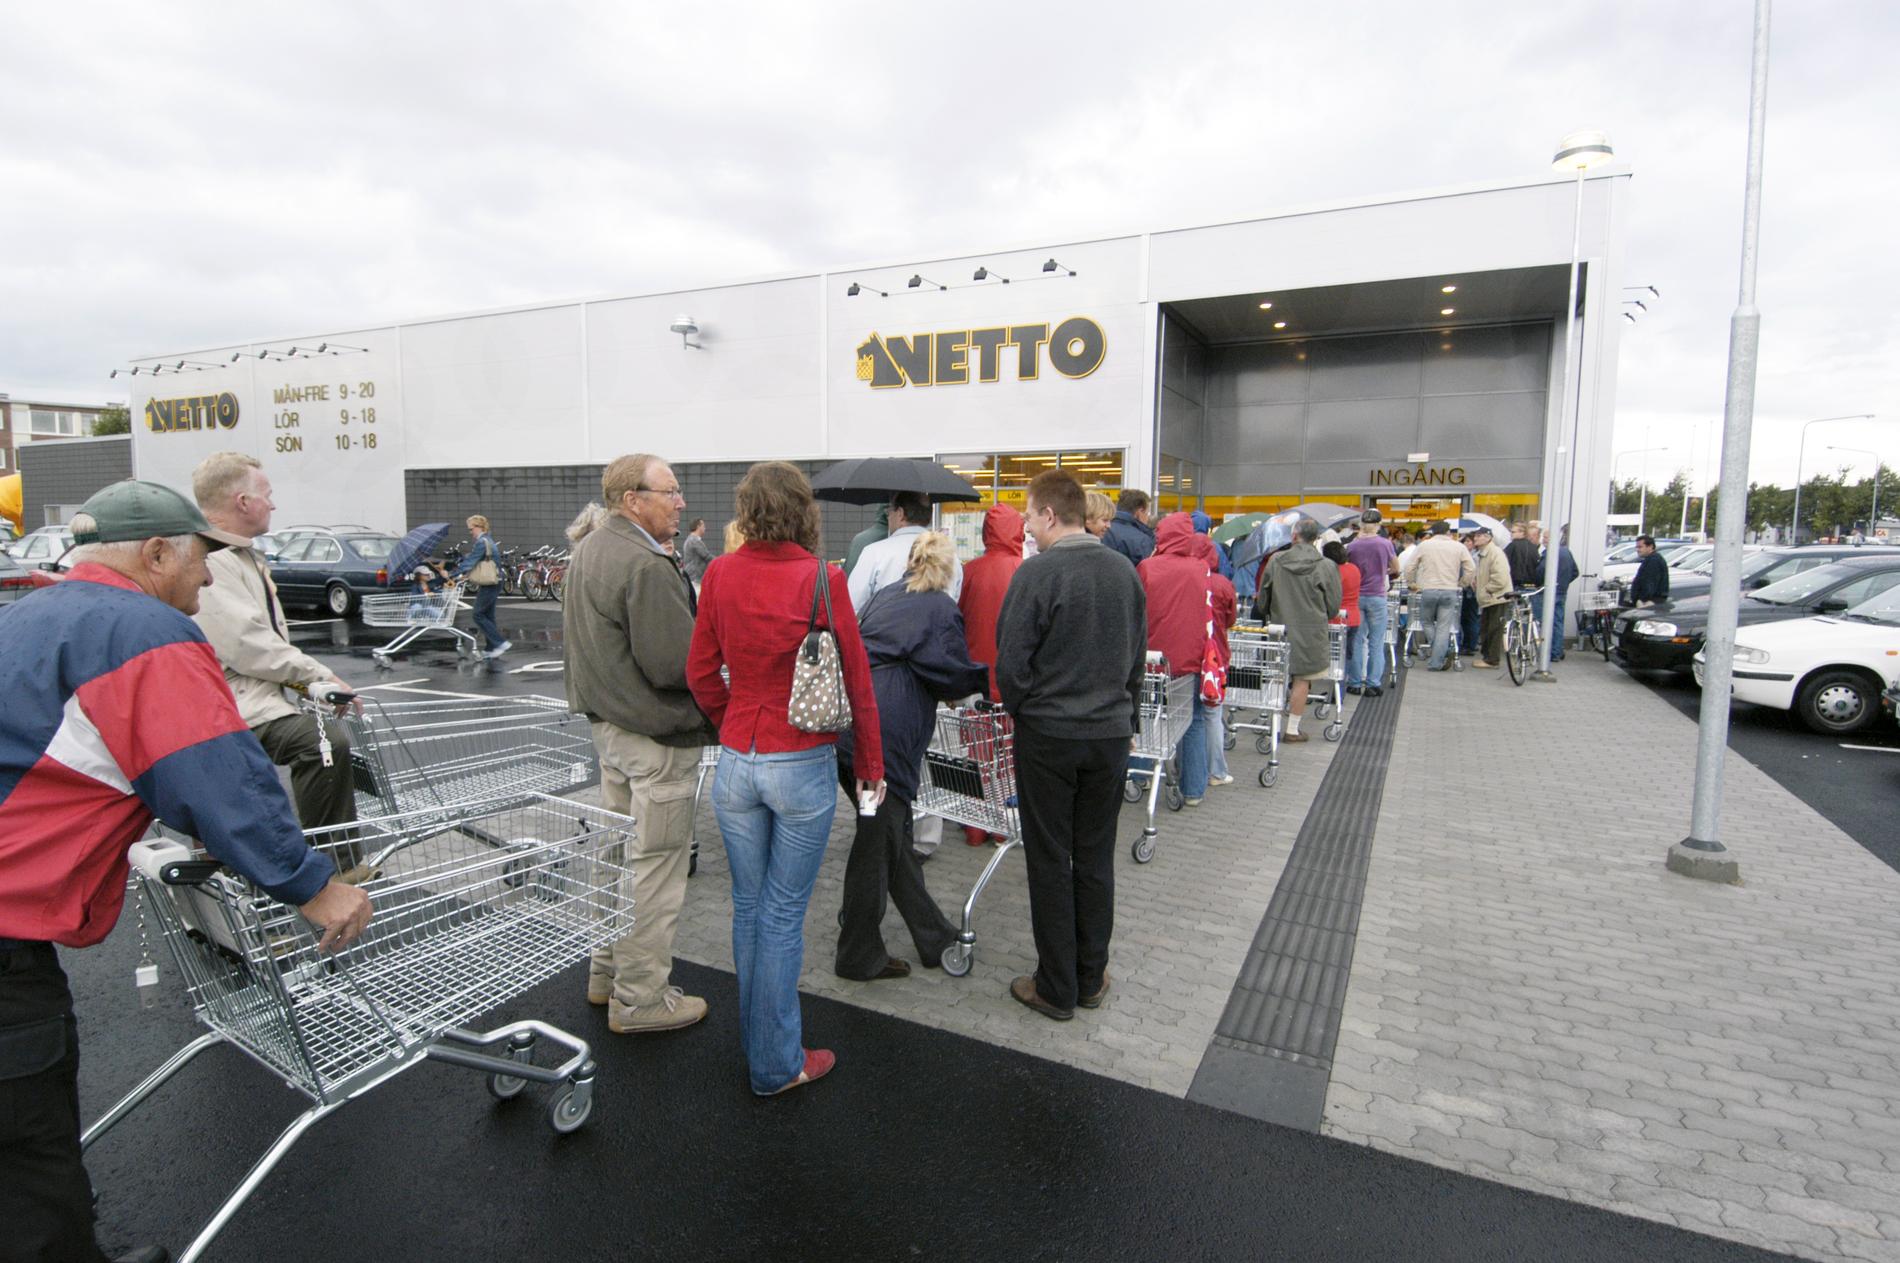 Så här kunde det se ut när Netto öppnade en butik 2004 i Halmstad. Arkivbild.